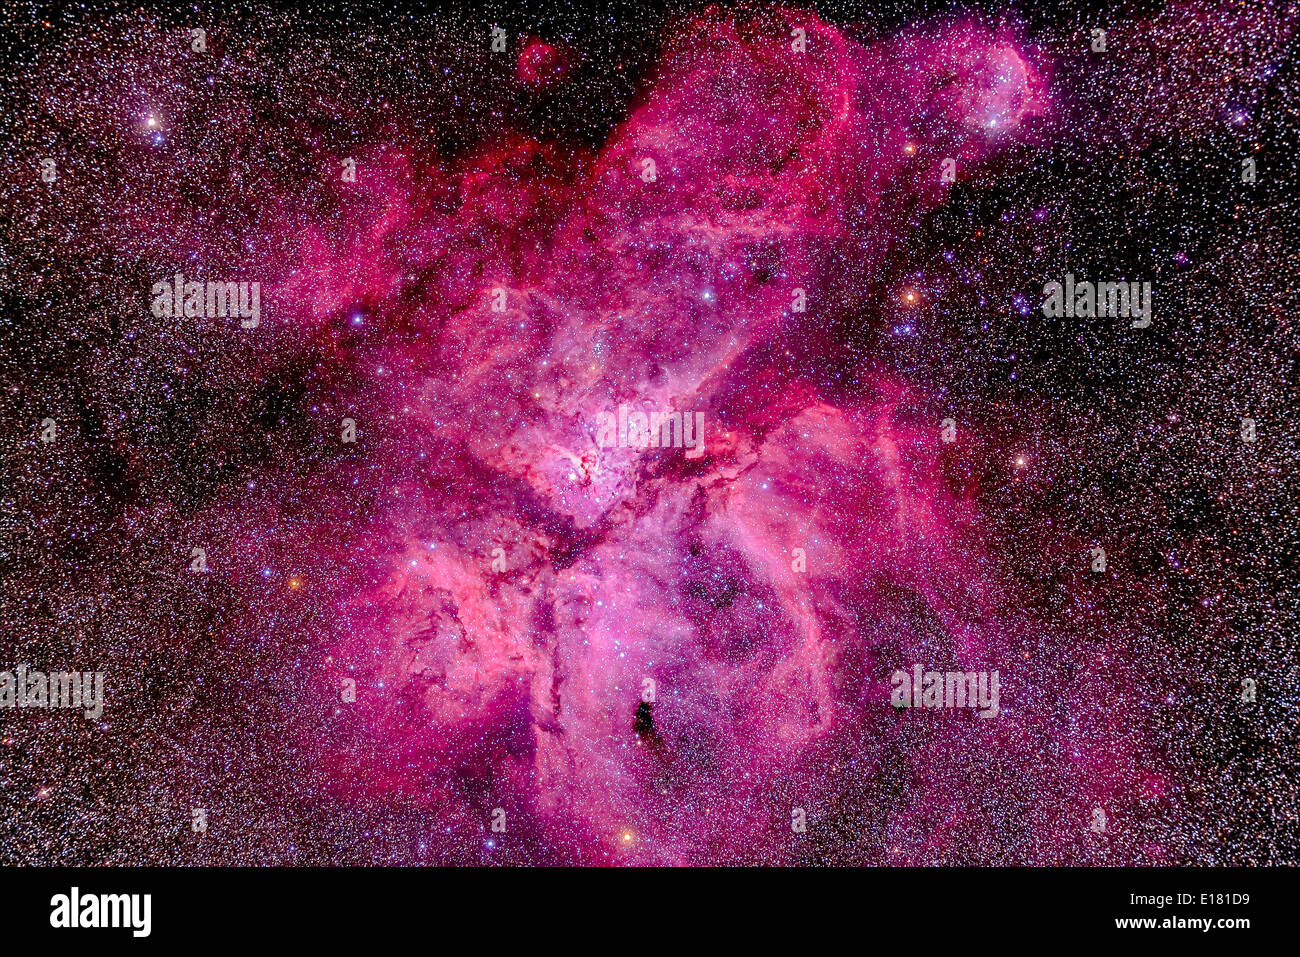 La nébuleuse Carina (aka Eta Carinae) dans le ciel du sud, tourné le 11 décembre 2012 à partir de Timor oriental Cottage, à Coonabarabran, NSW, Australi Banque D'Images